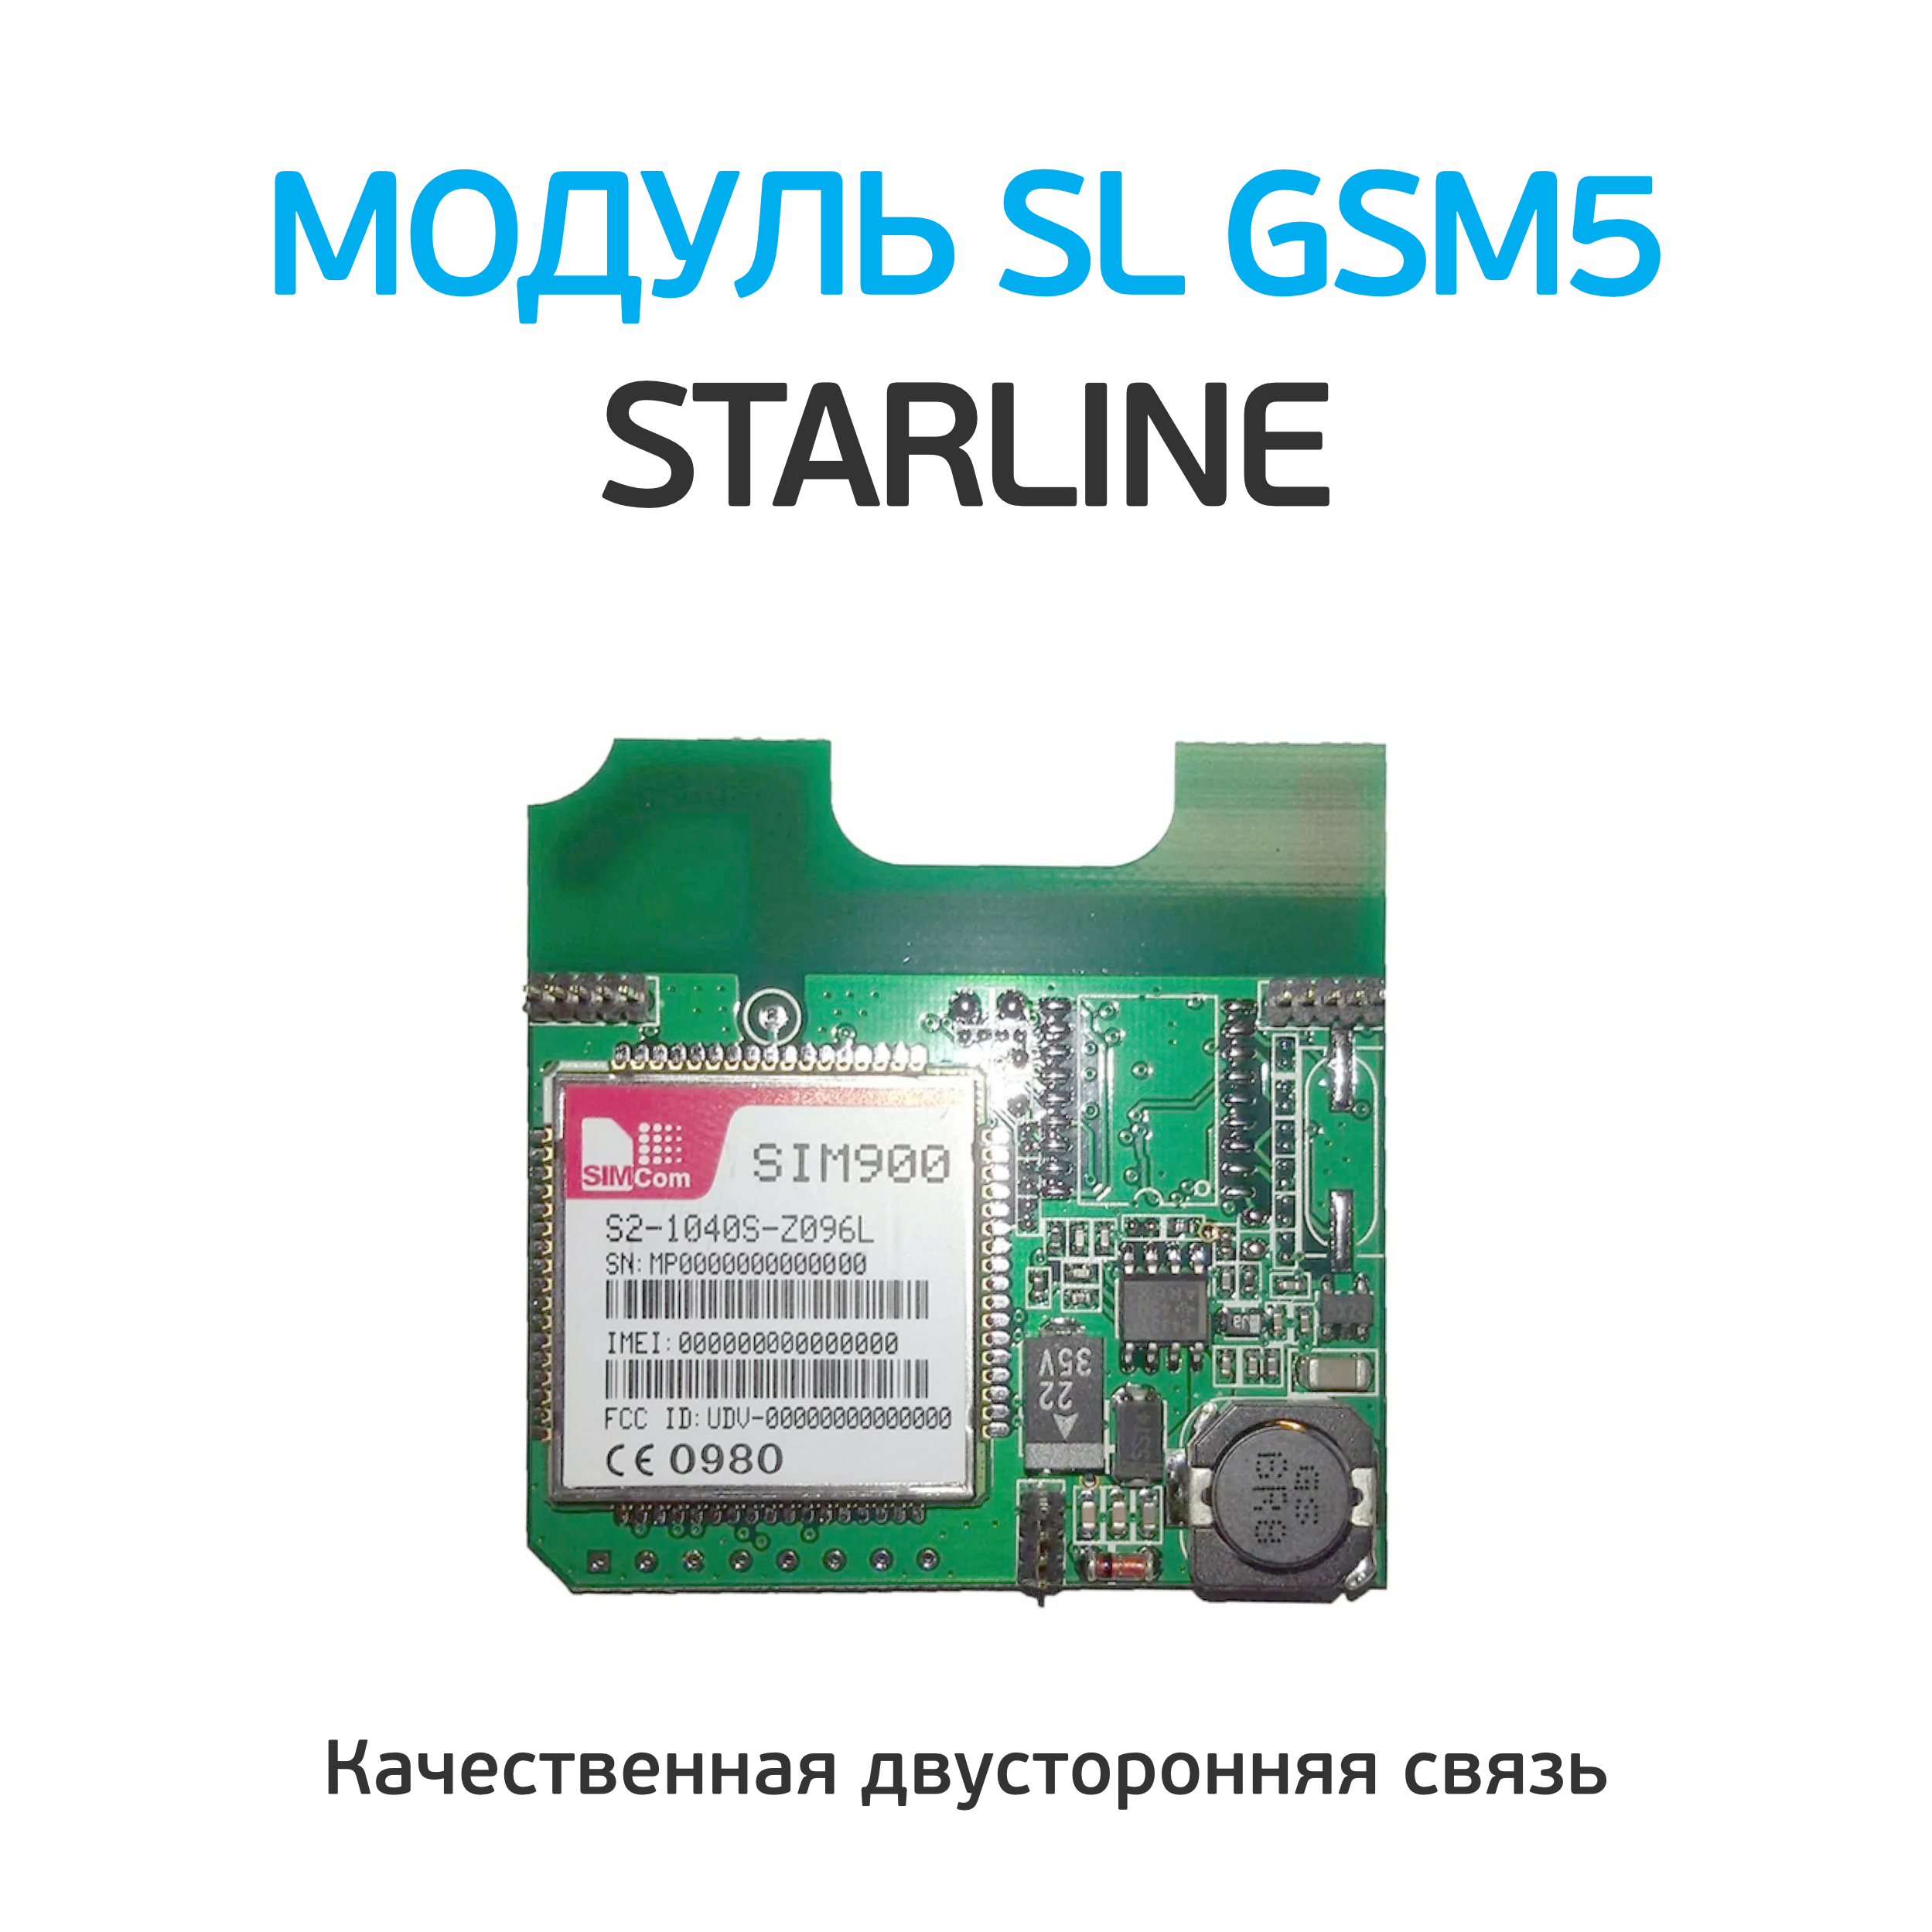 Gsm модуль старлайн купить. Модуль STARLINE GSM-5 мастер. STARLINE gsm5 модуль. Старлайн модуль GSM мастер. Модуль STARLINE 2can+2lin мастер.